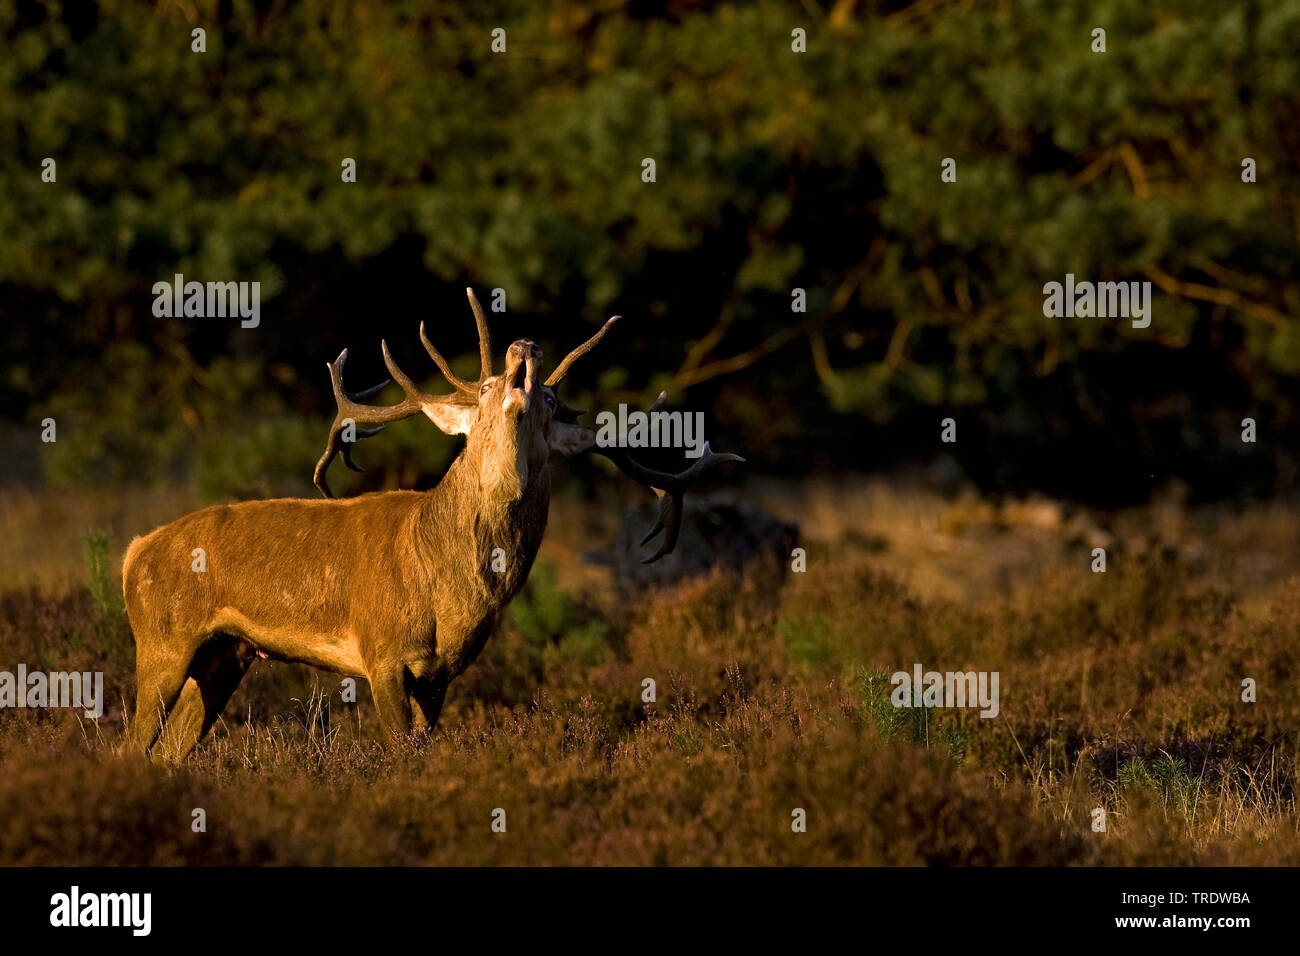 red deer (Cervus elaphus), barking, Netherlands Stock Photo